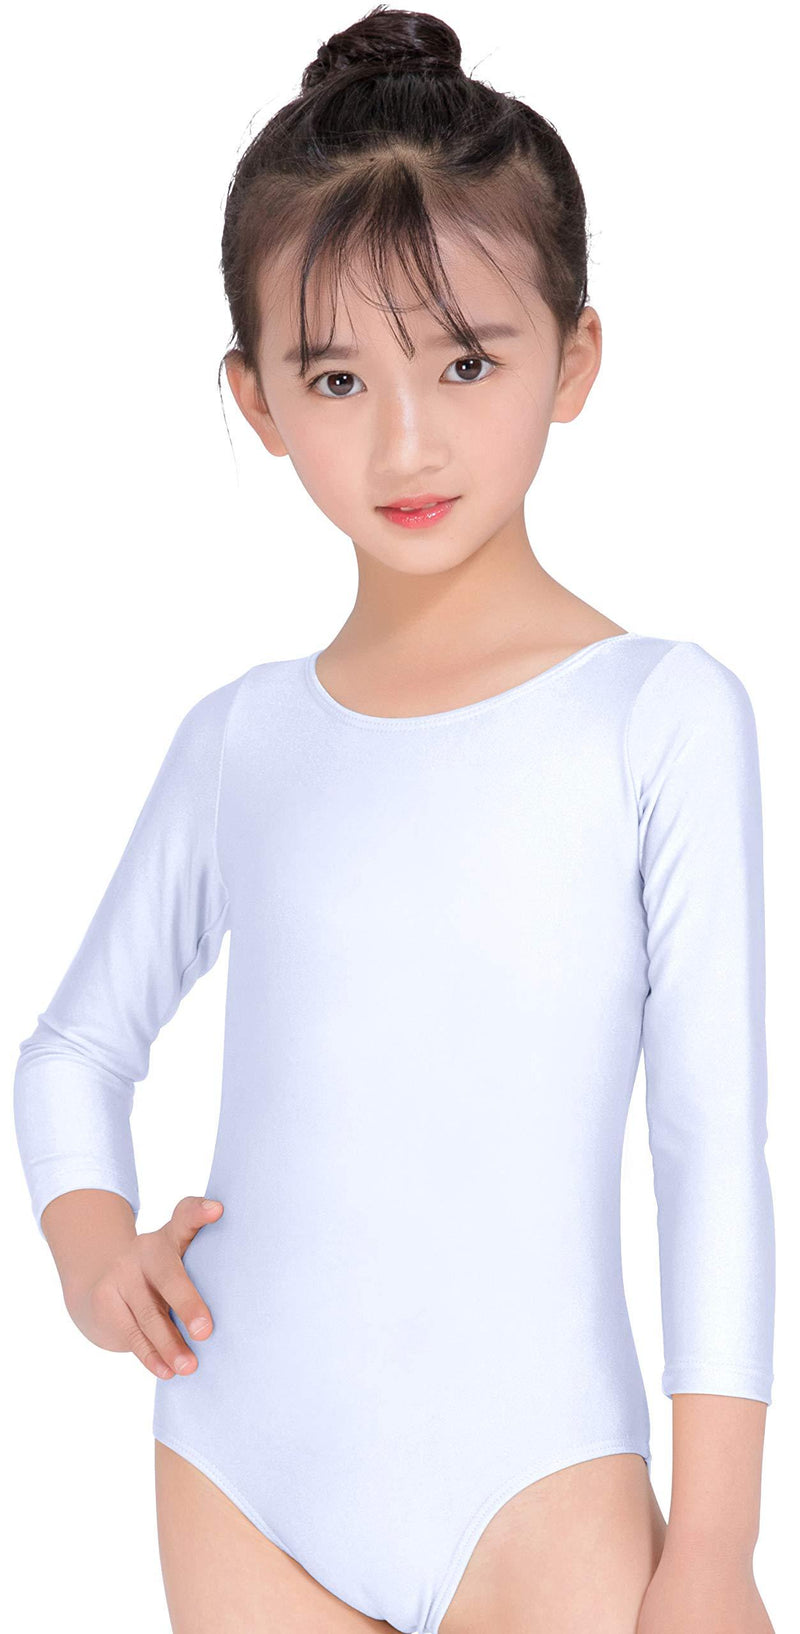 [AUSTRALIA] - Speerise Kids Long Sleeve Ballet Dance Leotard Dancewear for Child 6 White 